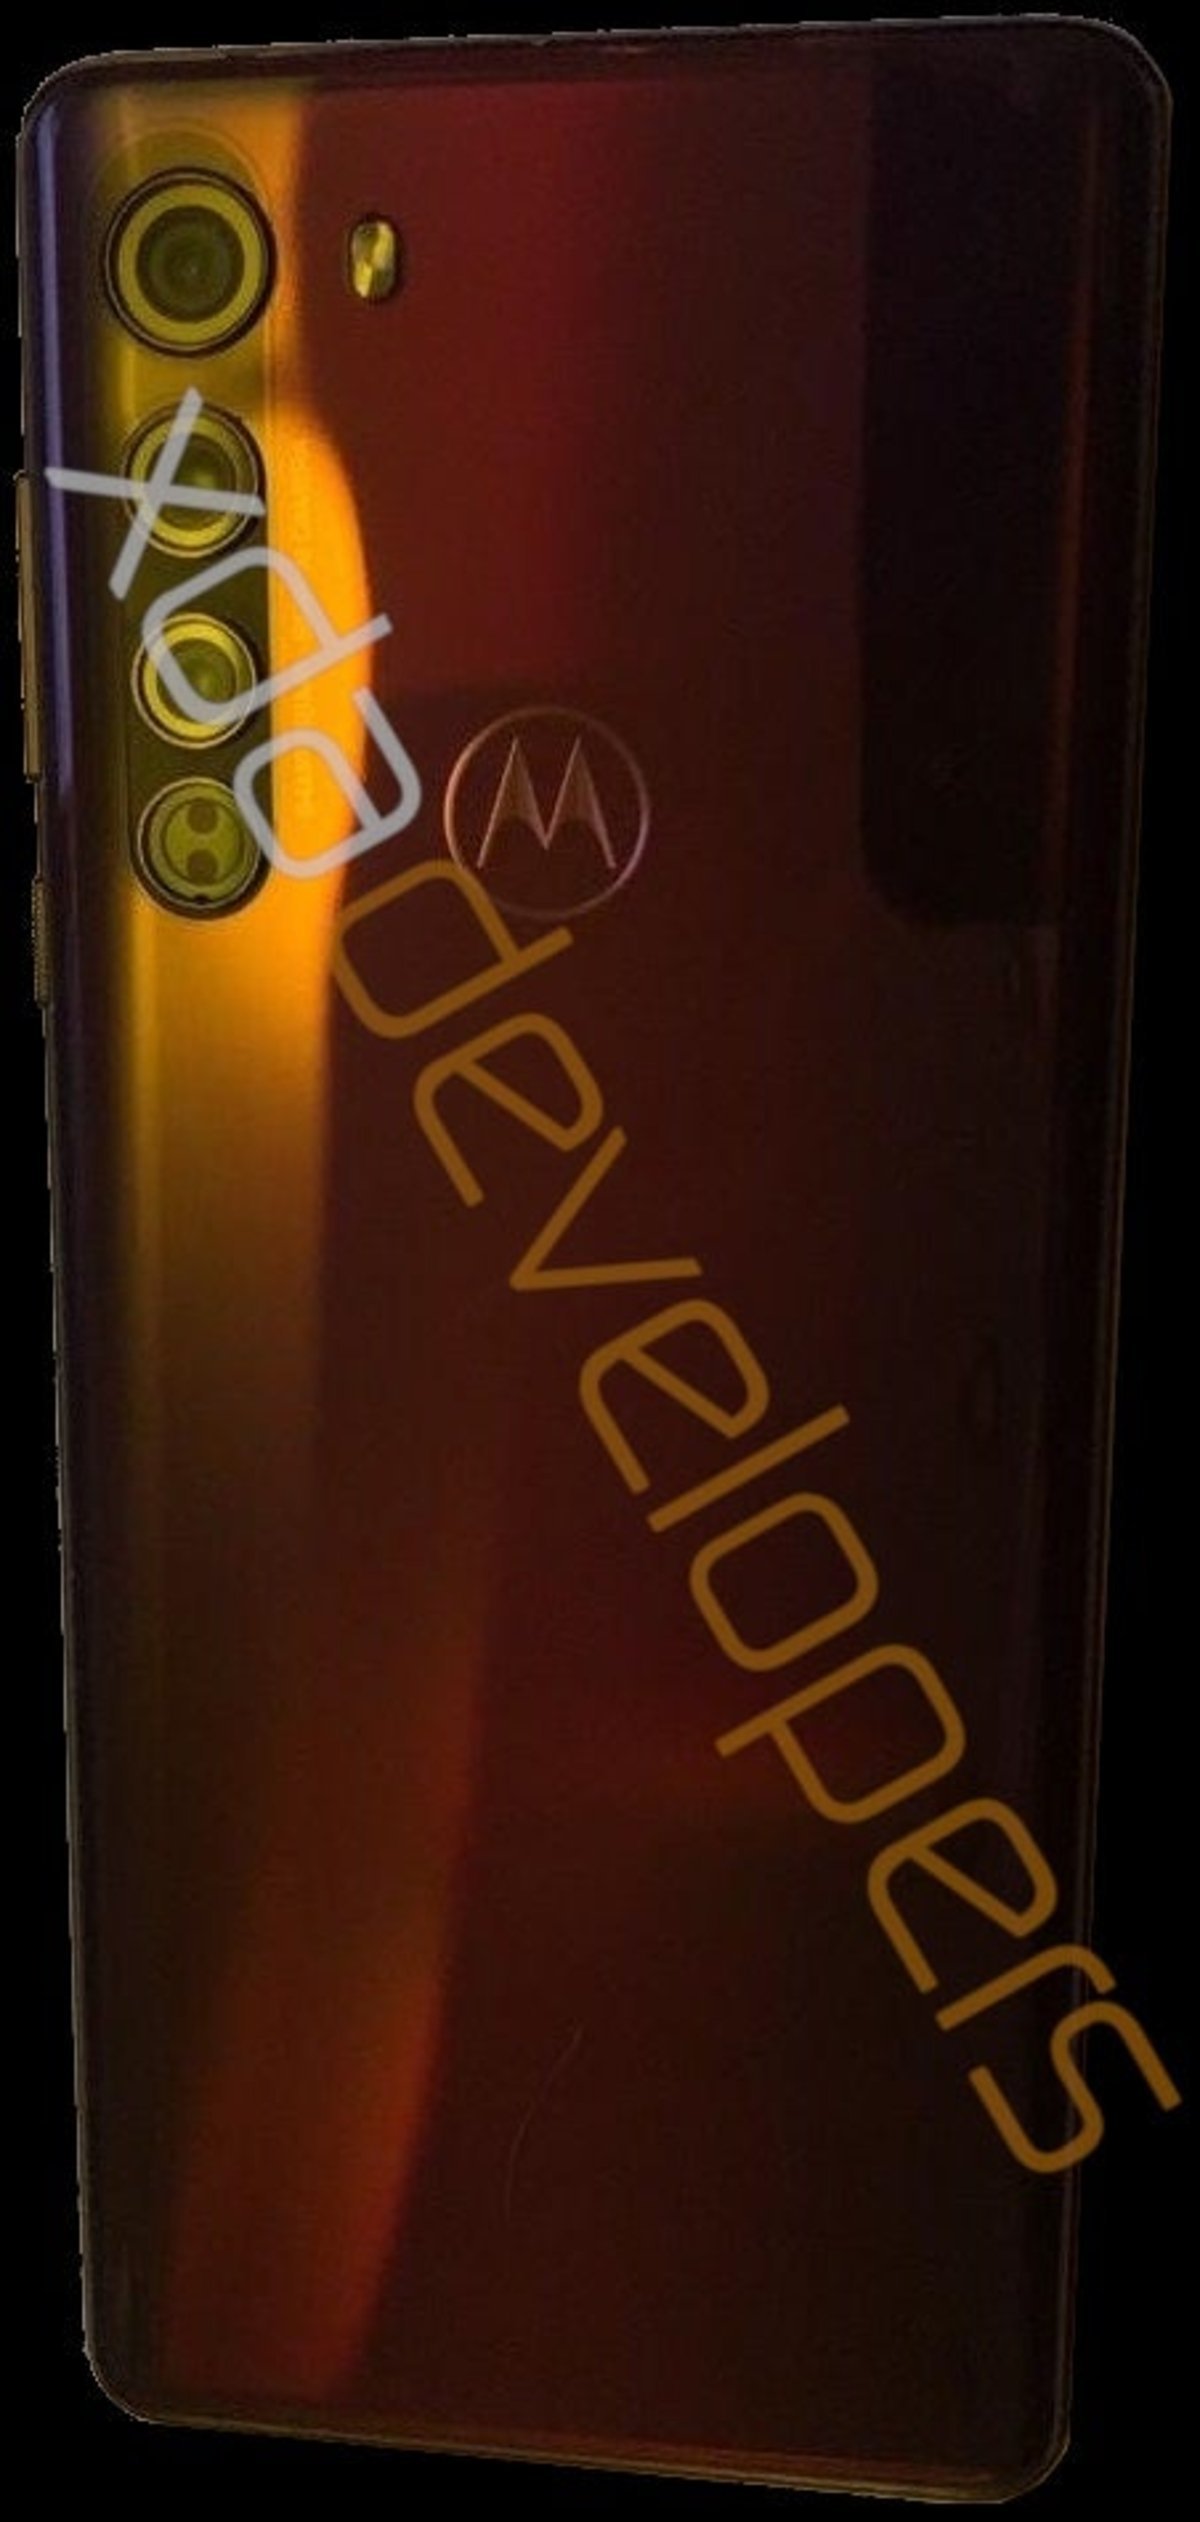 El primer Motorola de la historia con pantalla curva aparece al completo en una filtración con cuádruple cámara, pantalla de 90Hz y Snapdragon 765